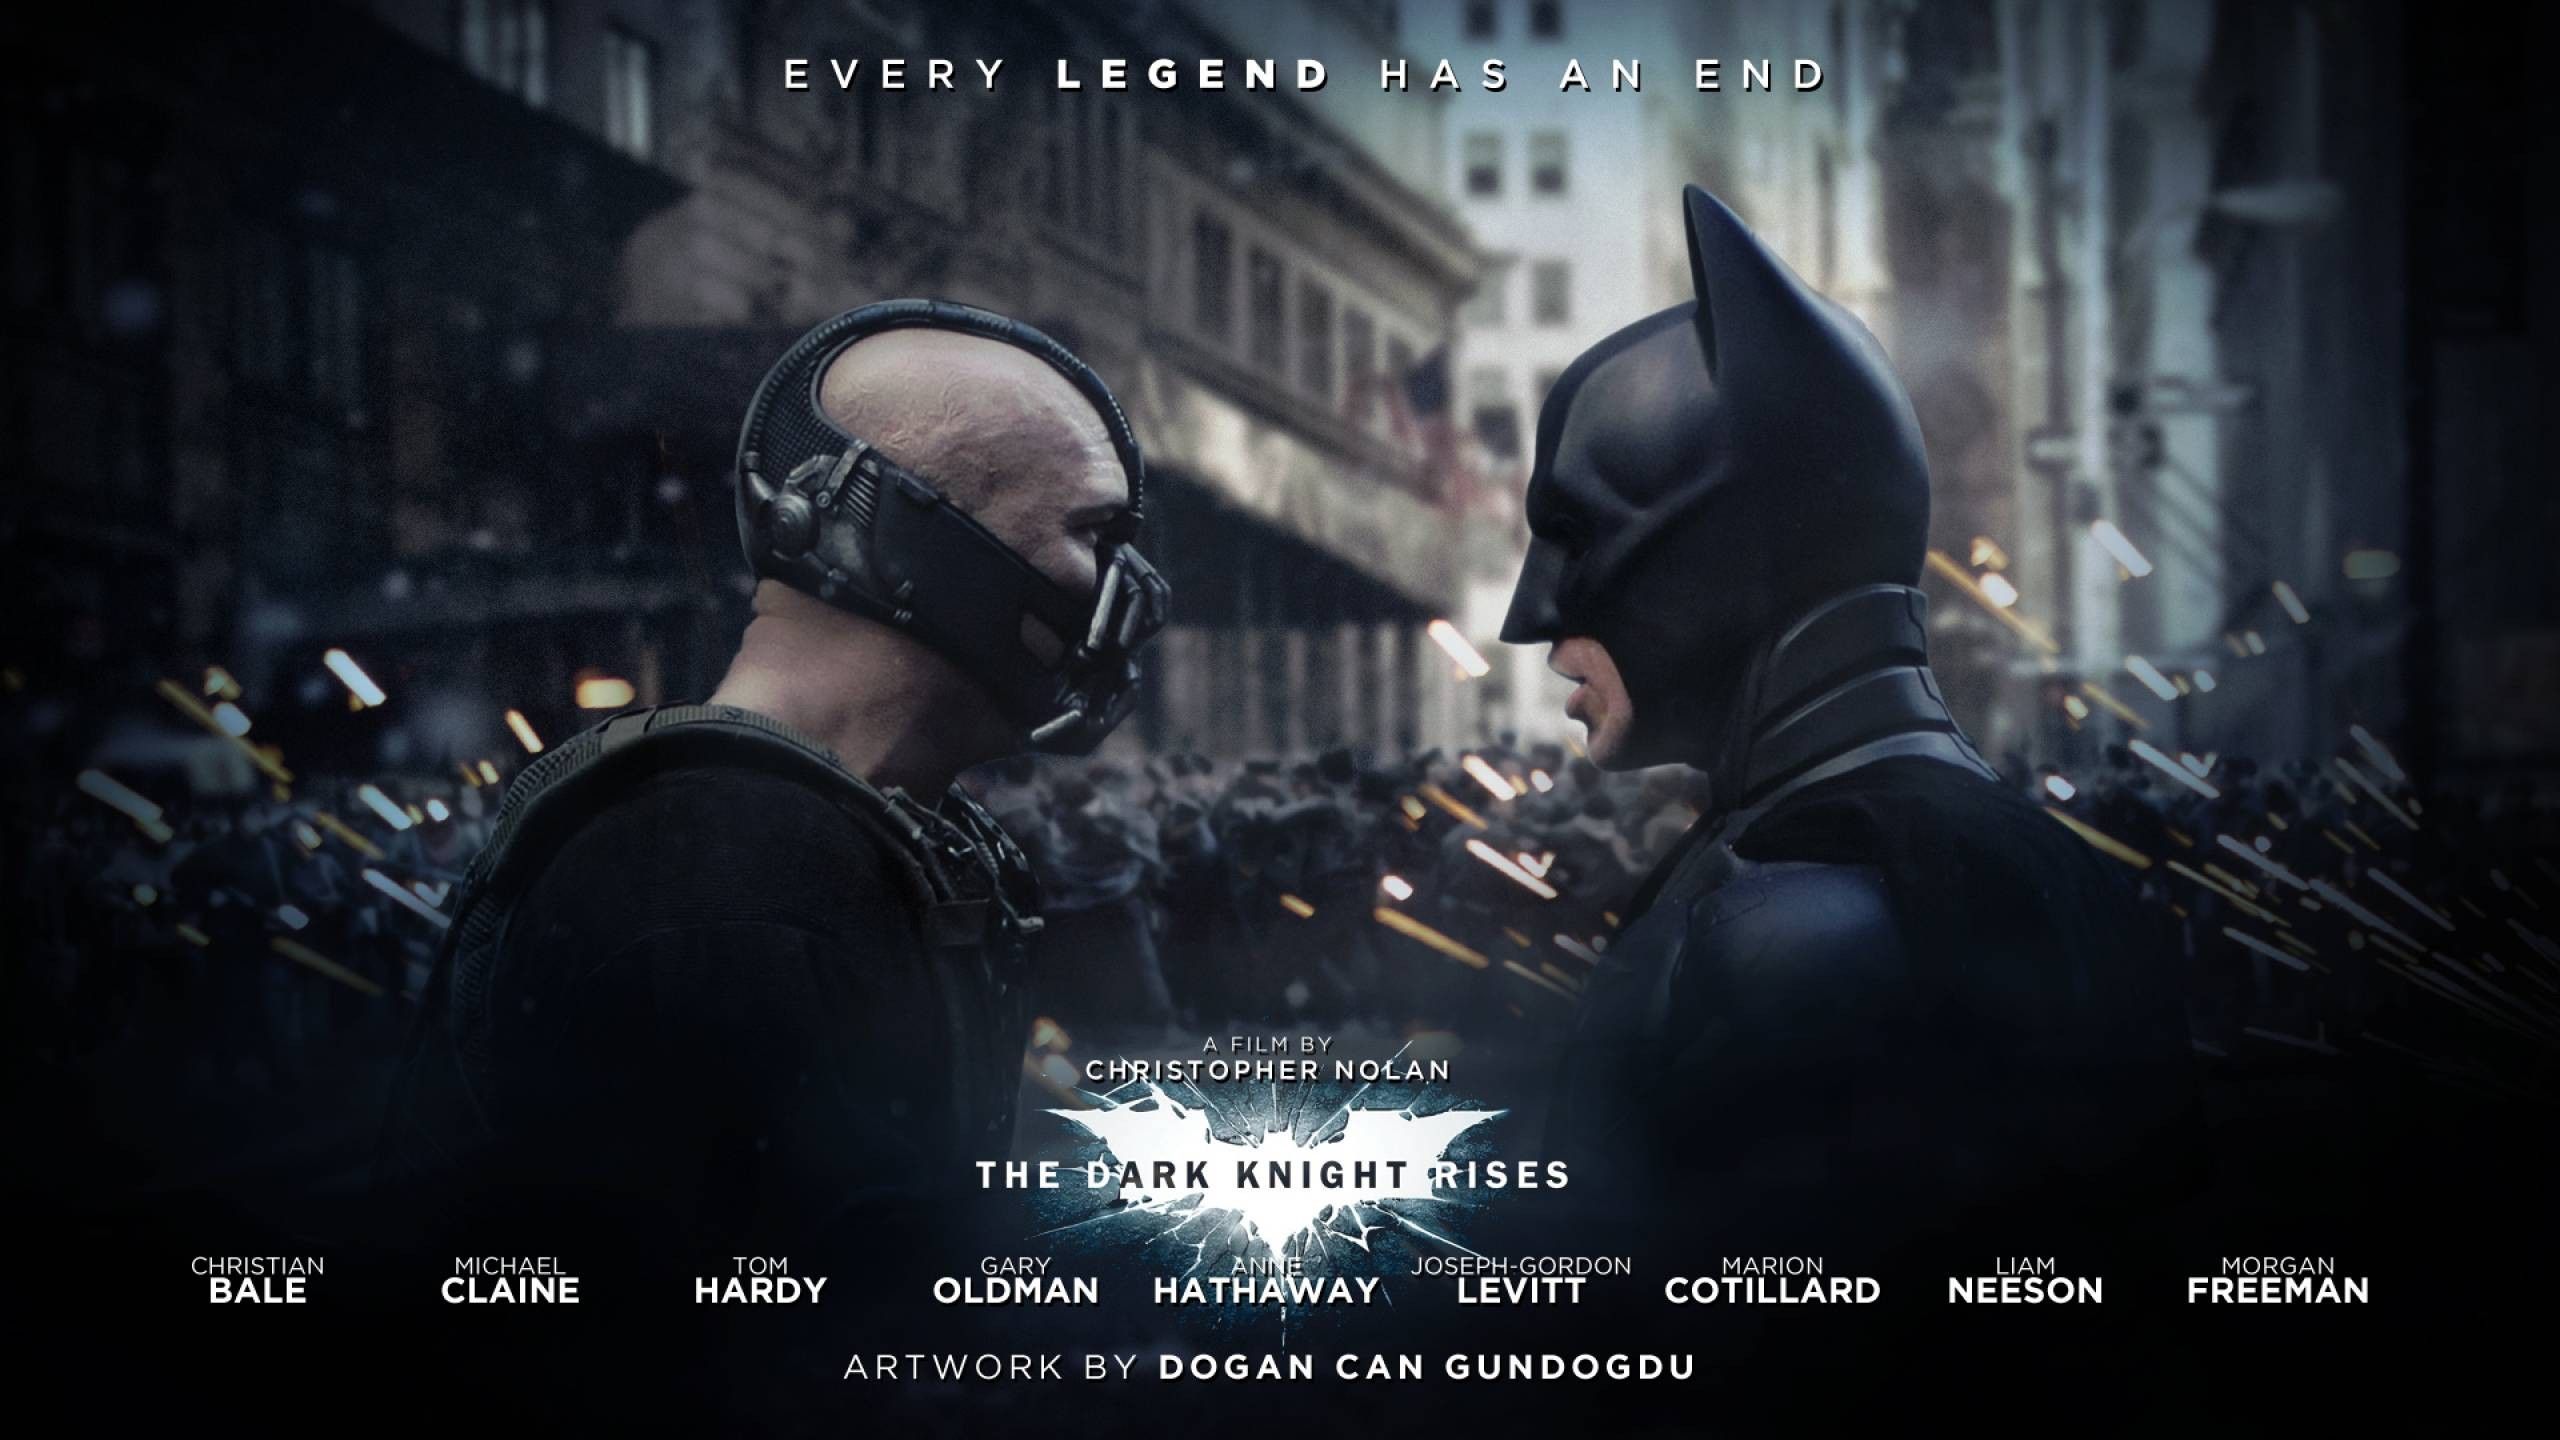 Wallpaper, 2560x1440 px, Bane, Batman, movies, The Dark Knight Rises 2560x1440